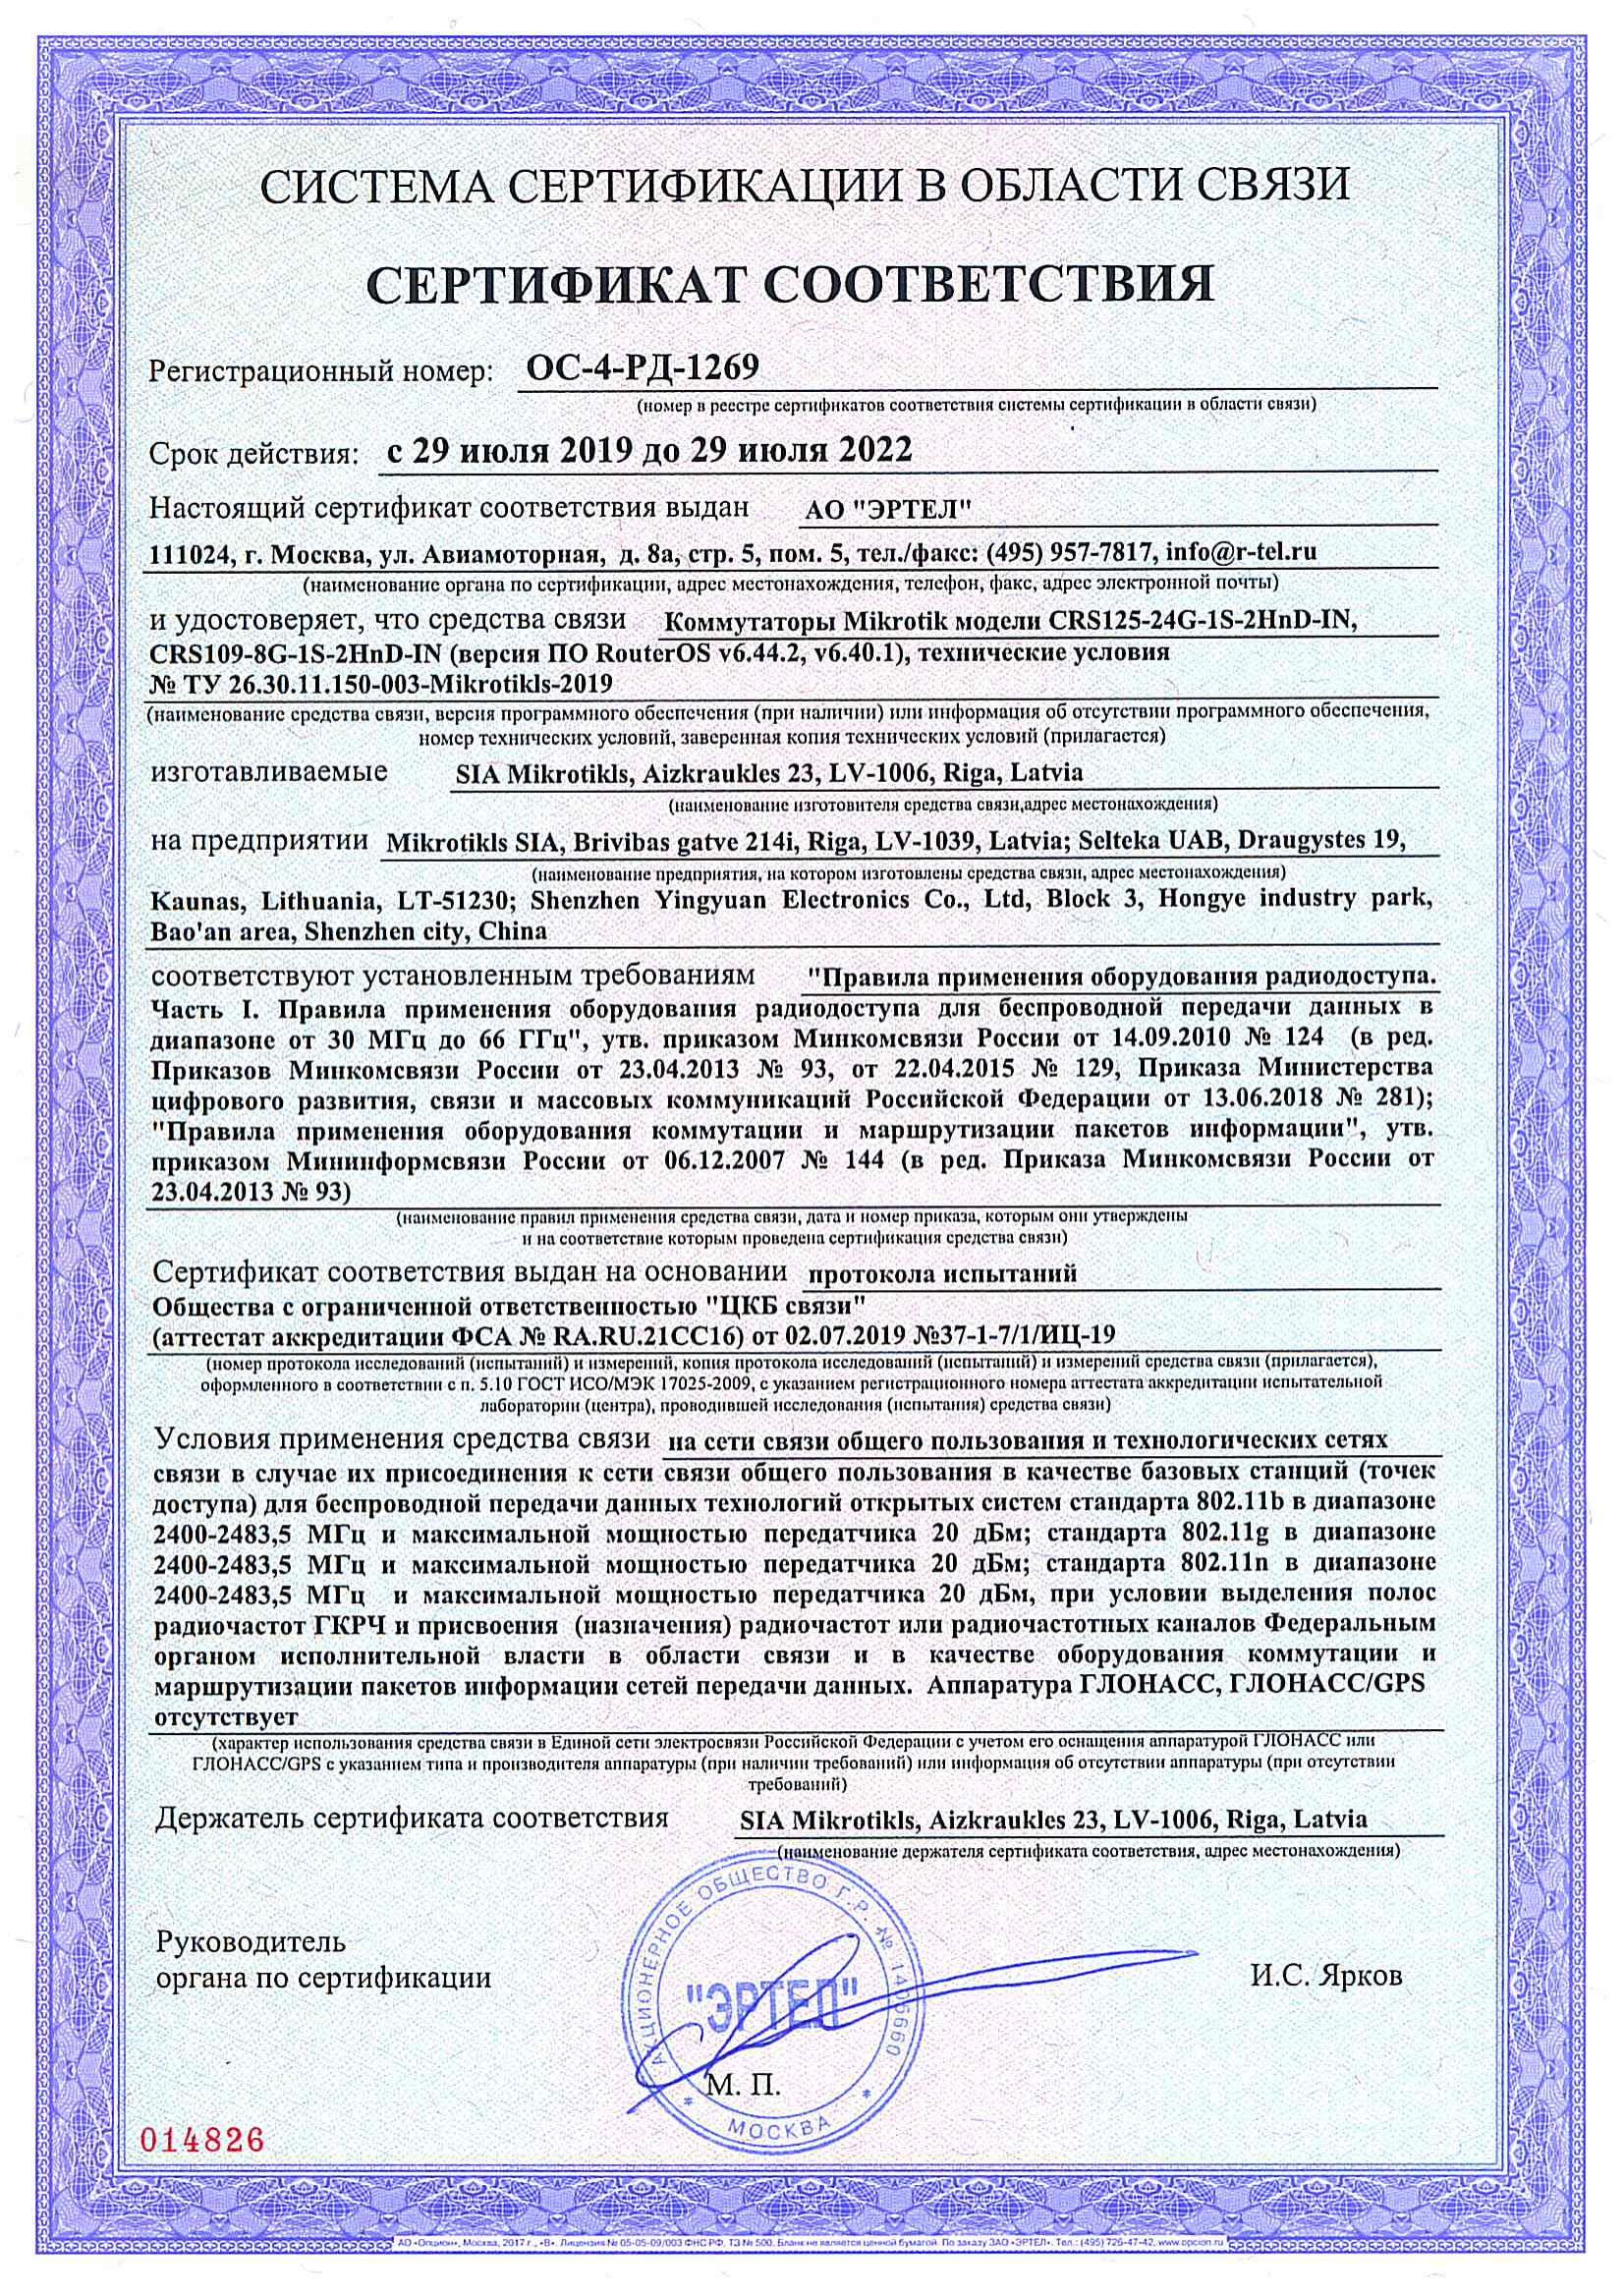 Сертификат соответствия в области связи ОС-4-РД-1269